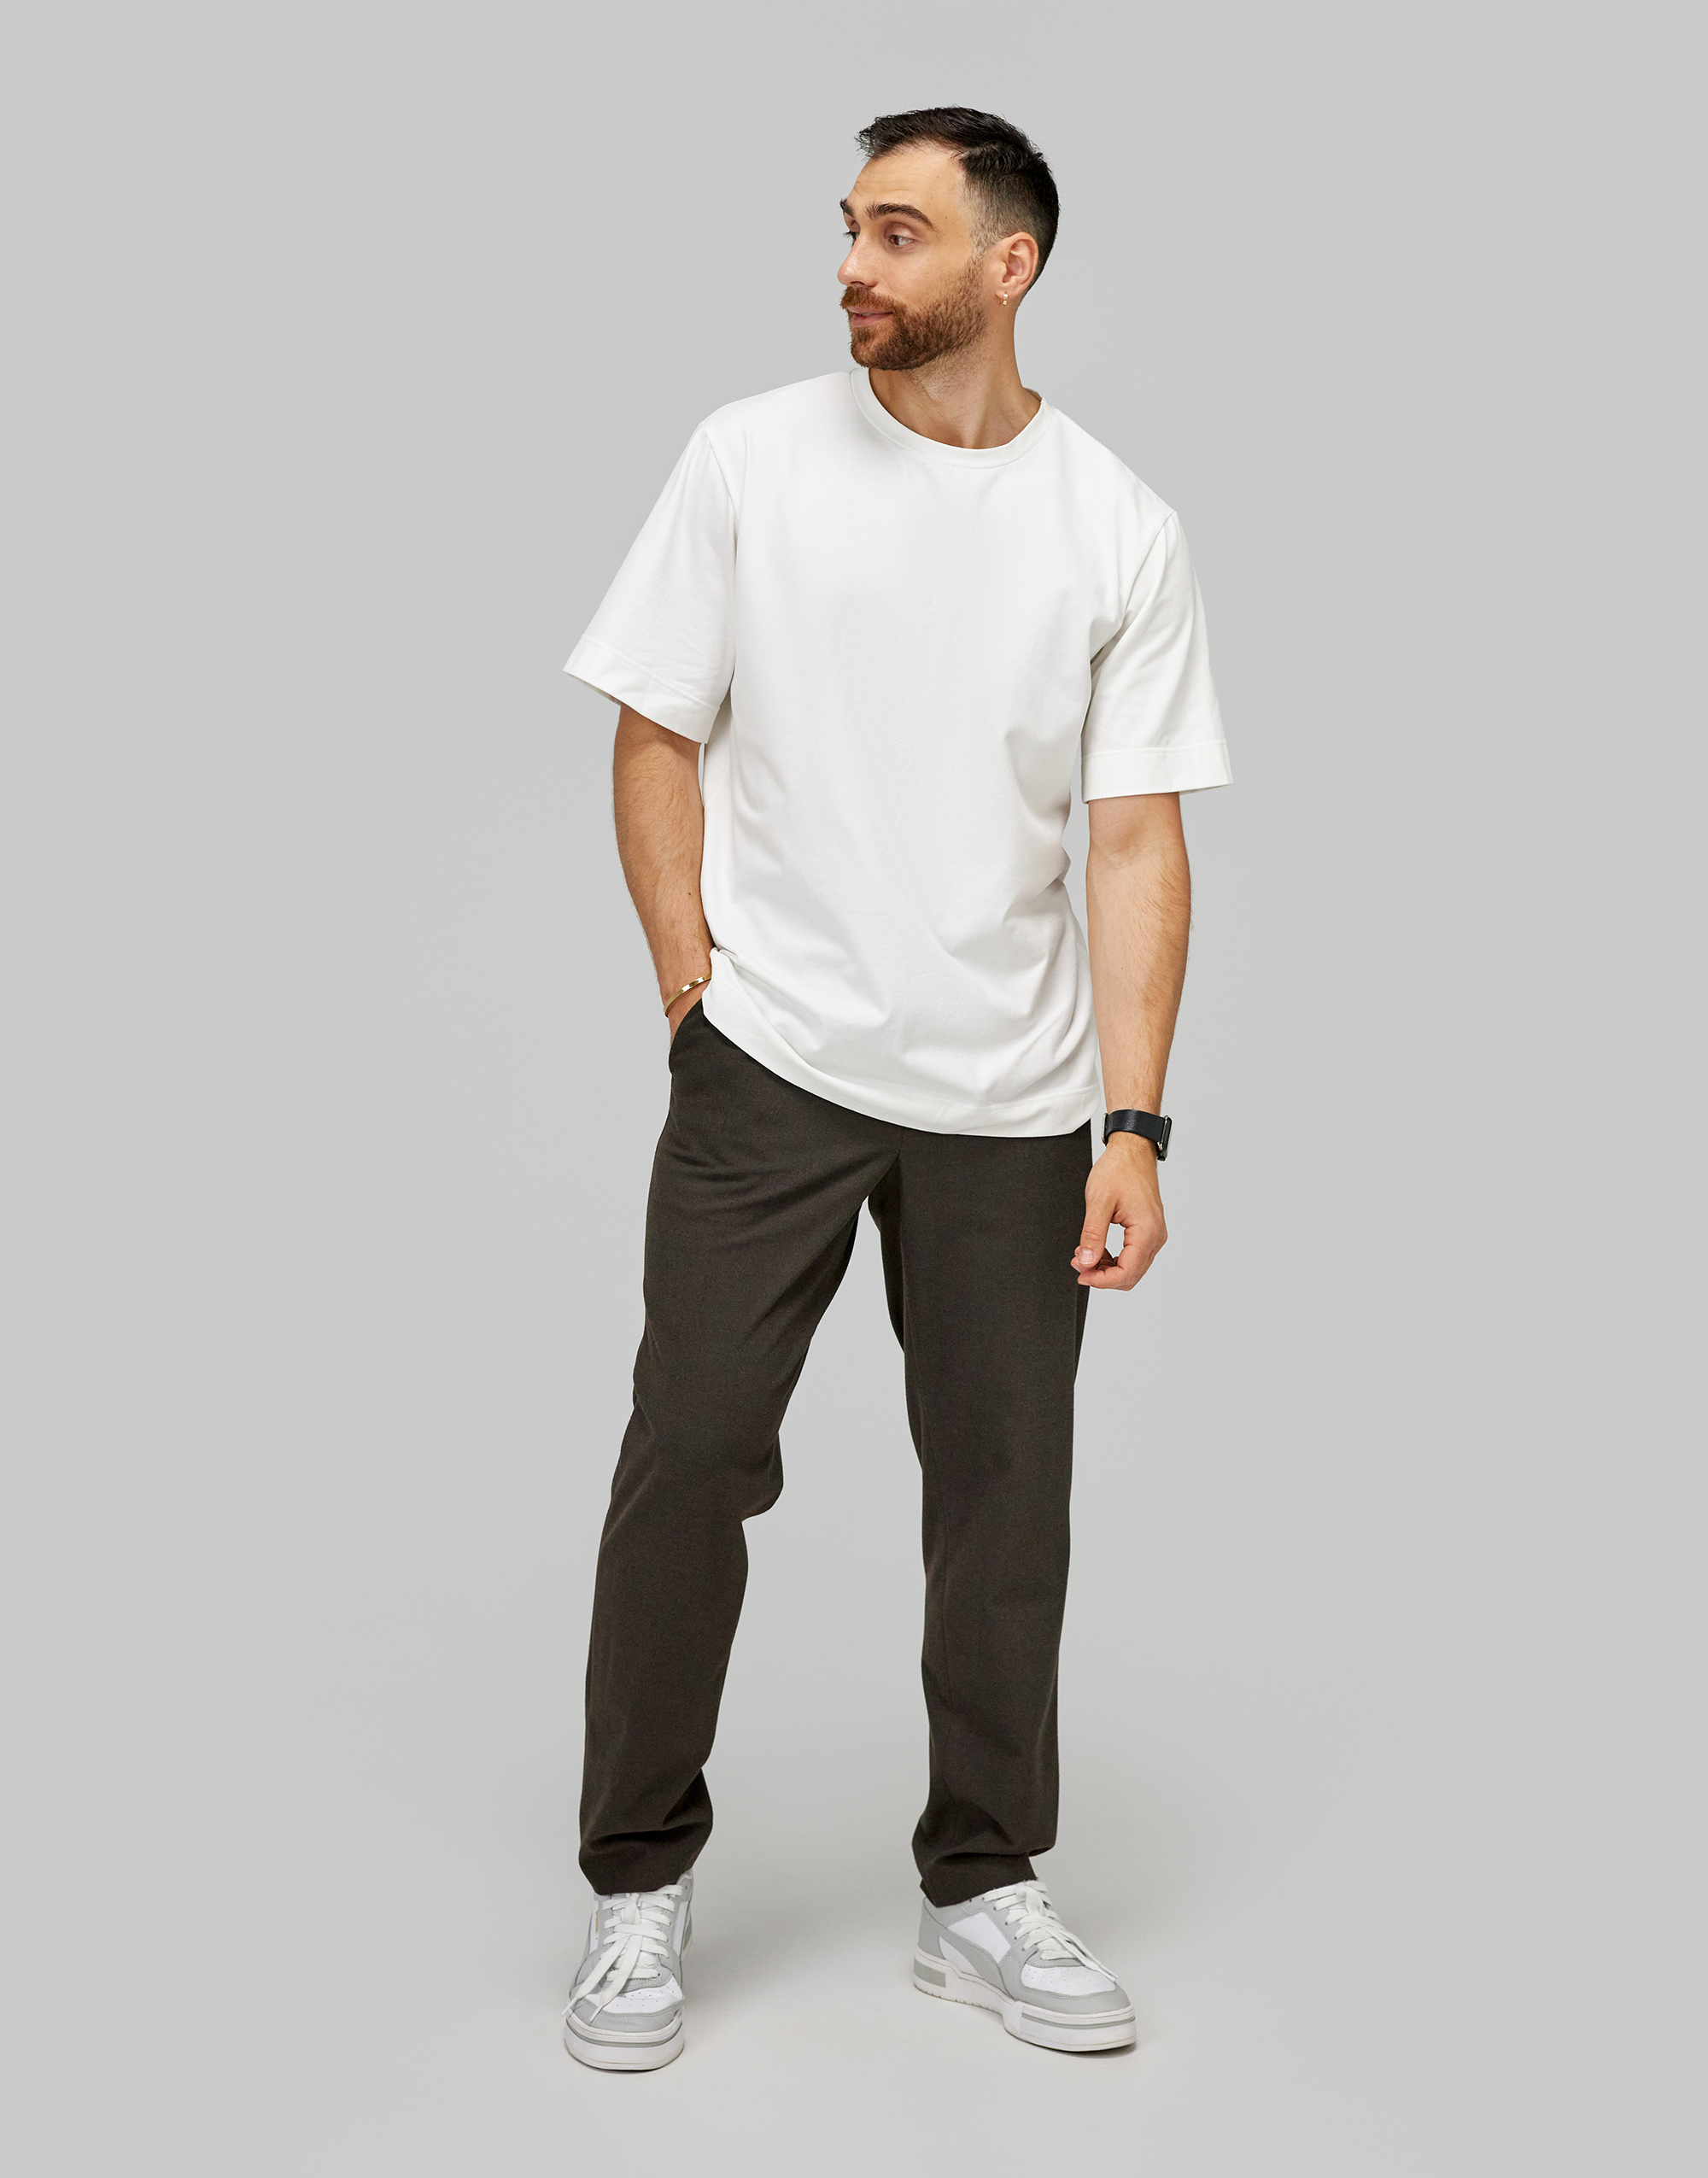 Мужские брюки, выкройка Grasser №915 – купить онлайн на сайте GRASSER,каталог выкроек с ценами